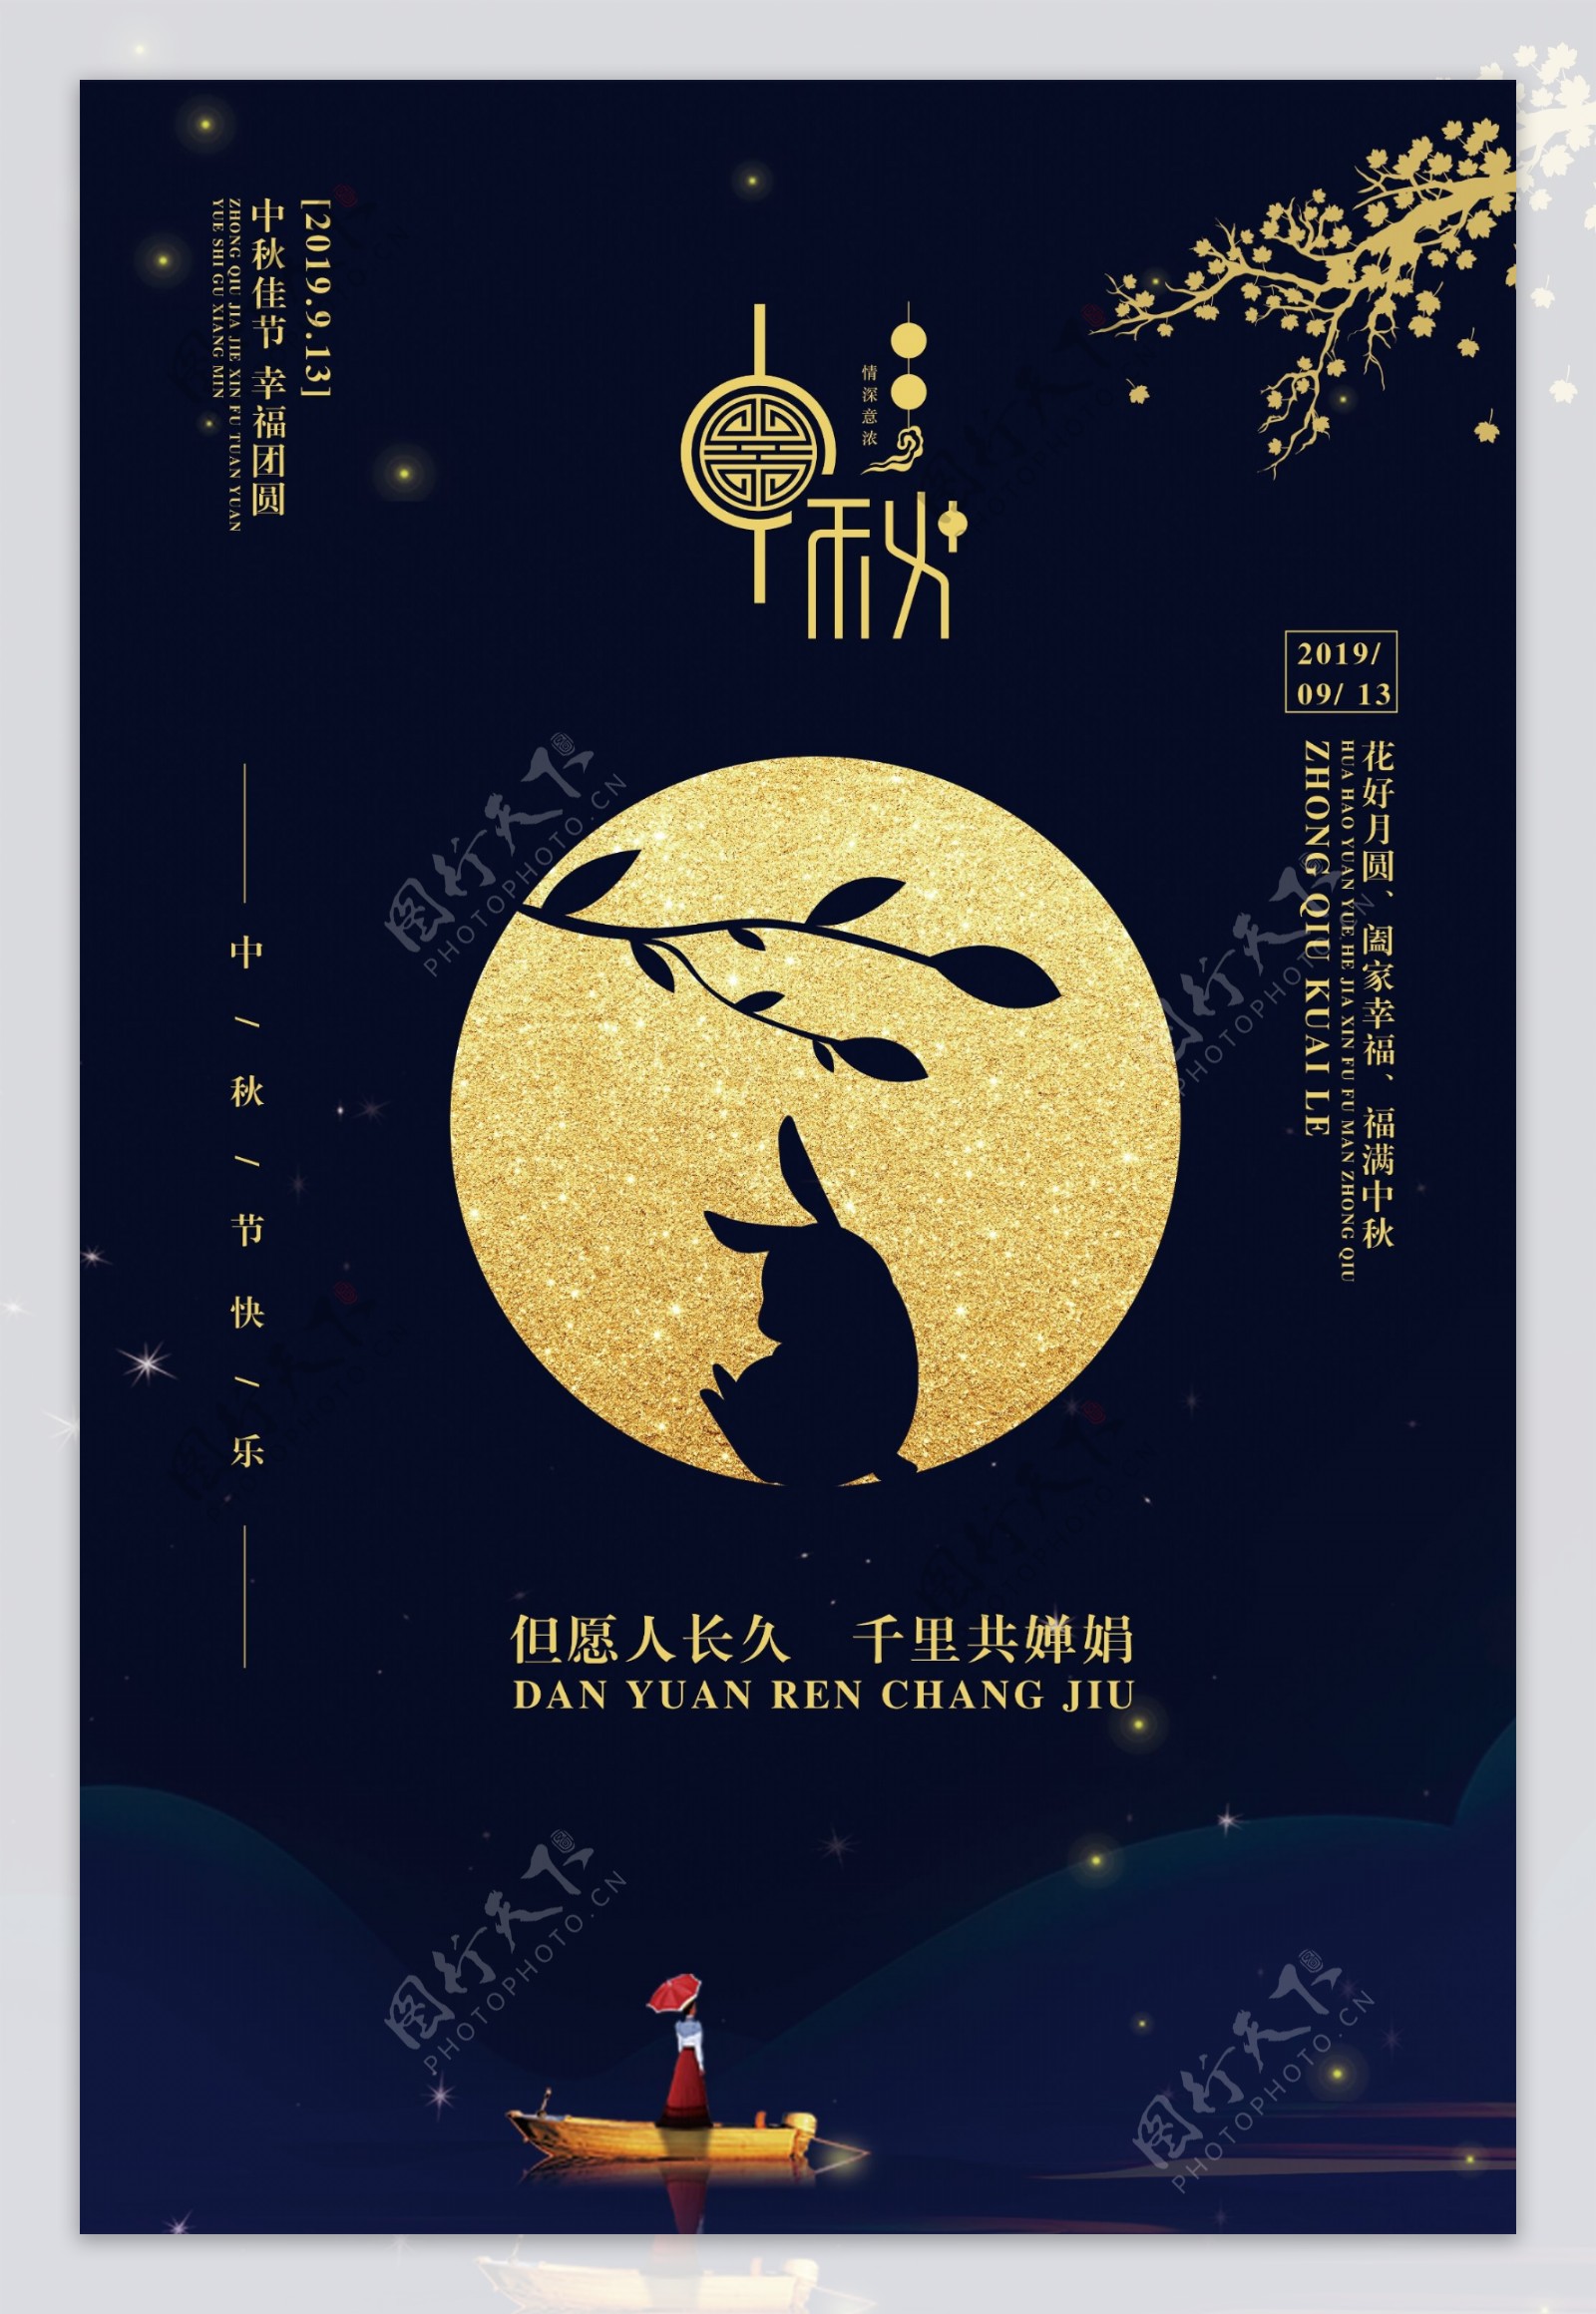 中秋传统节日活动宣传海报